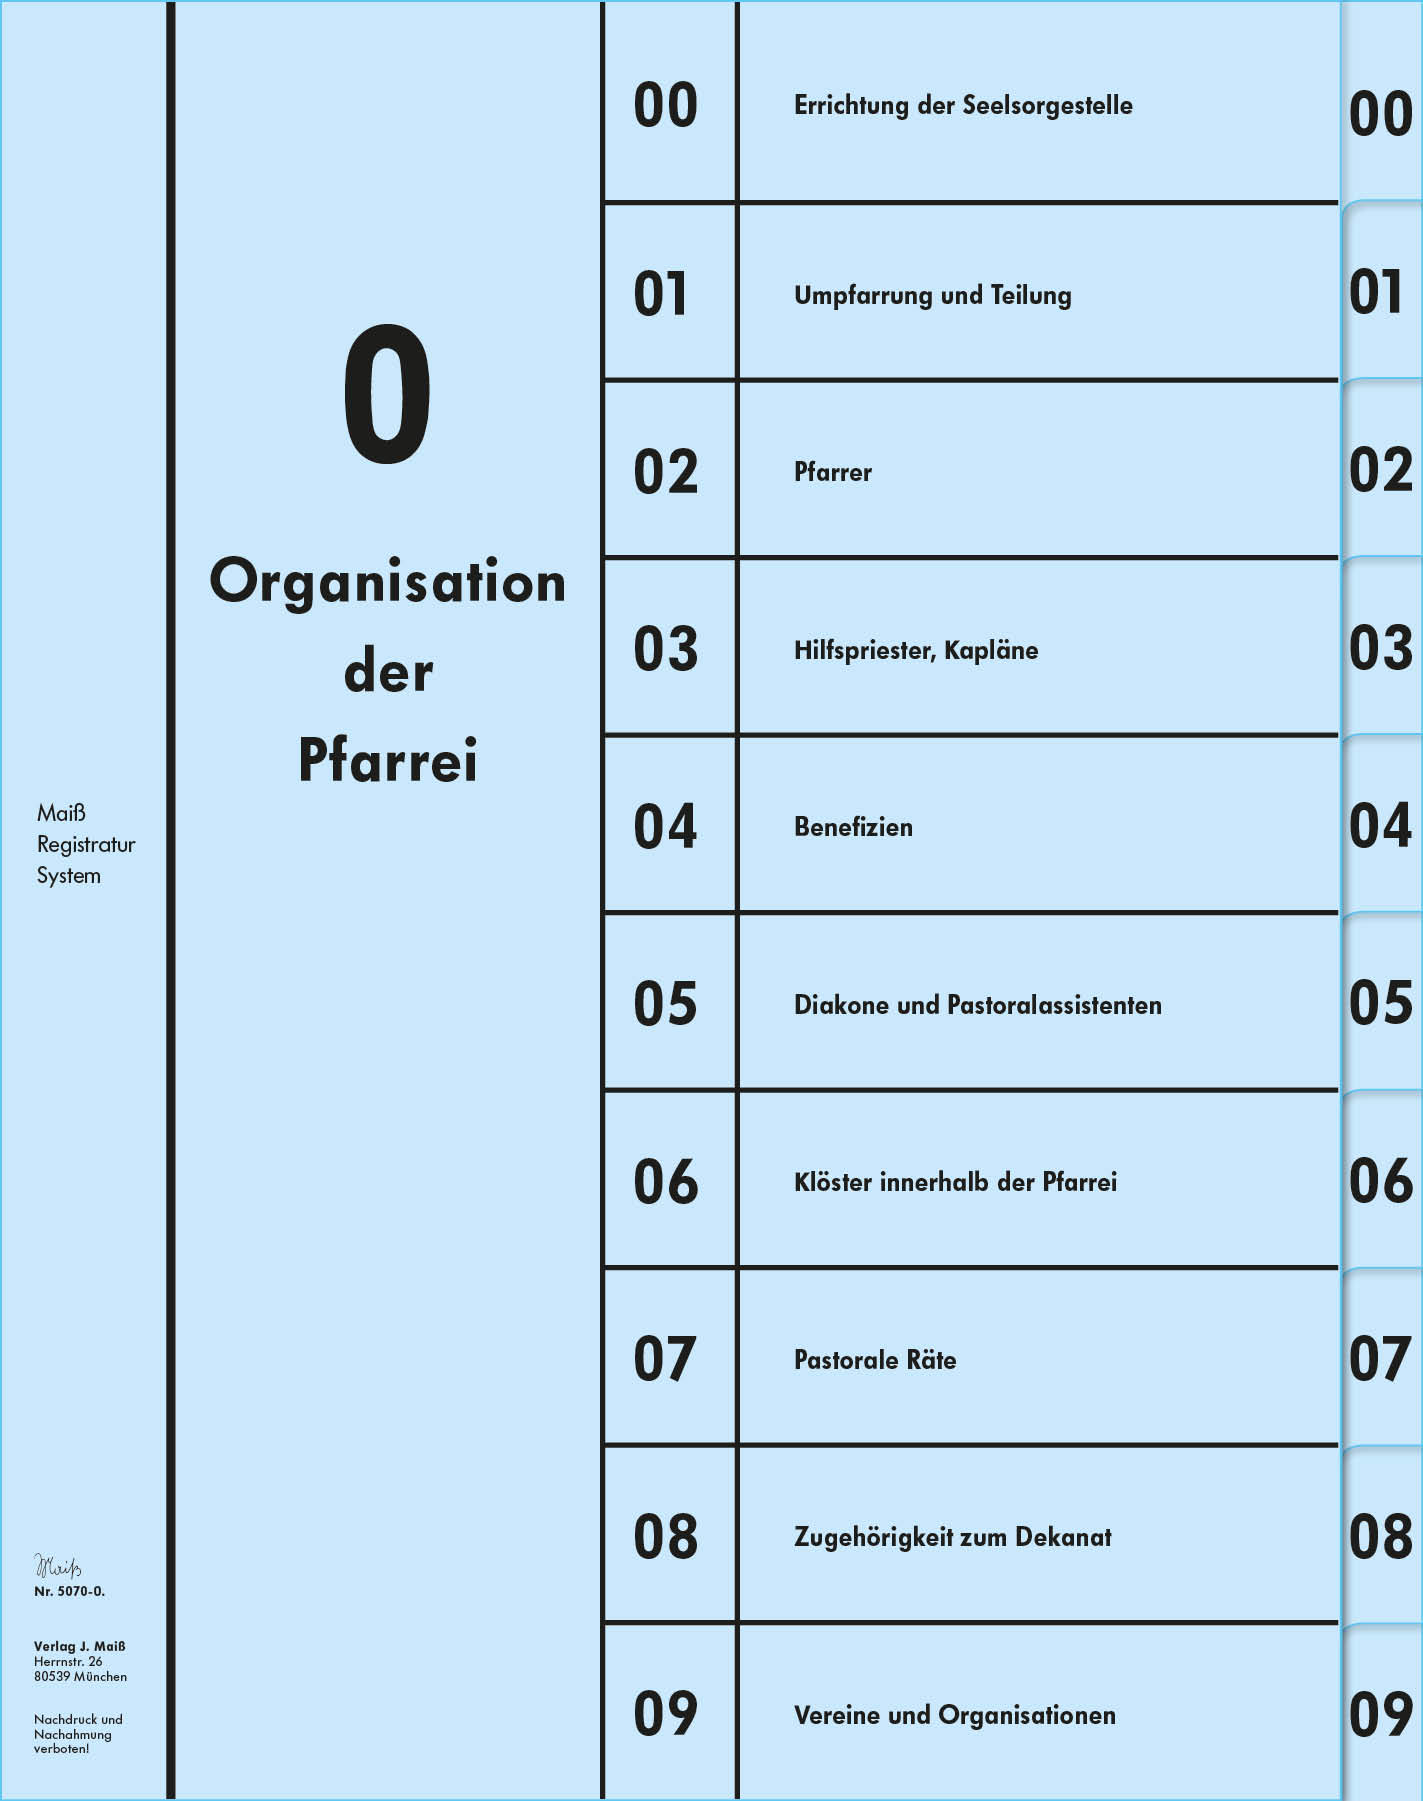 Register Gruppe 0 (00-09) Organisation der Pfarrei